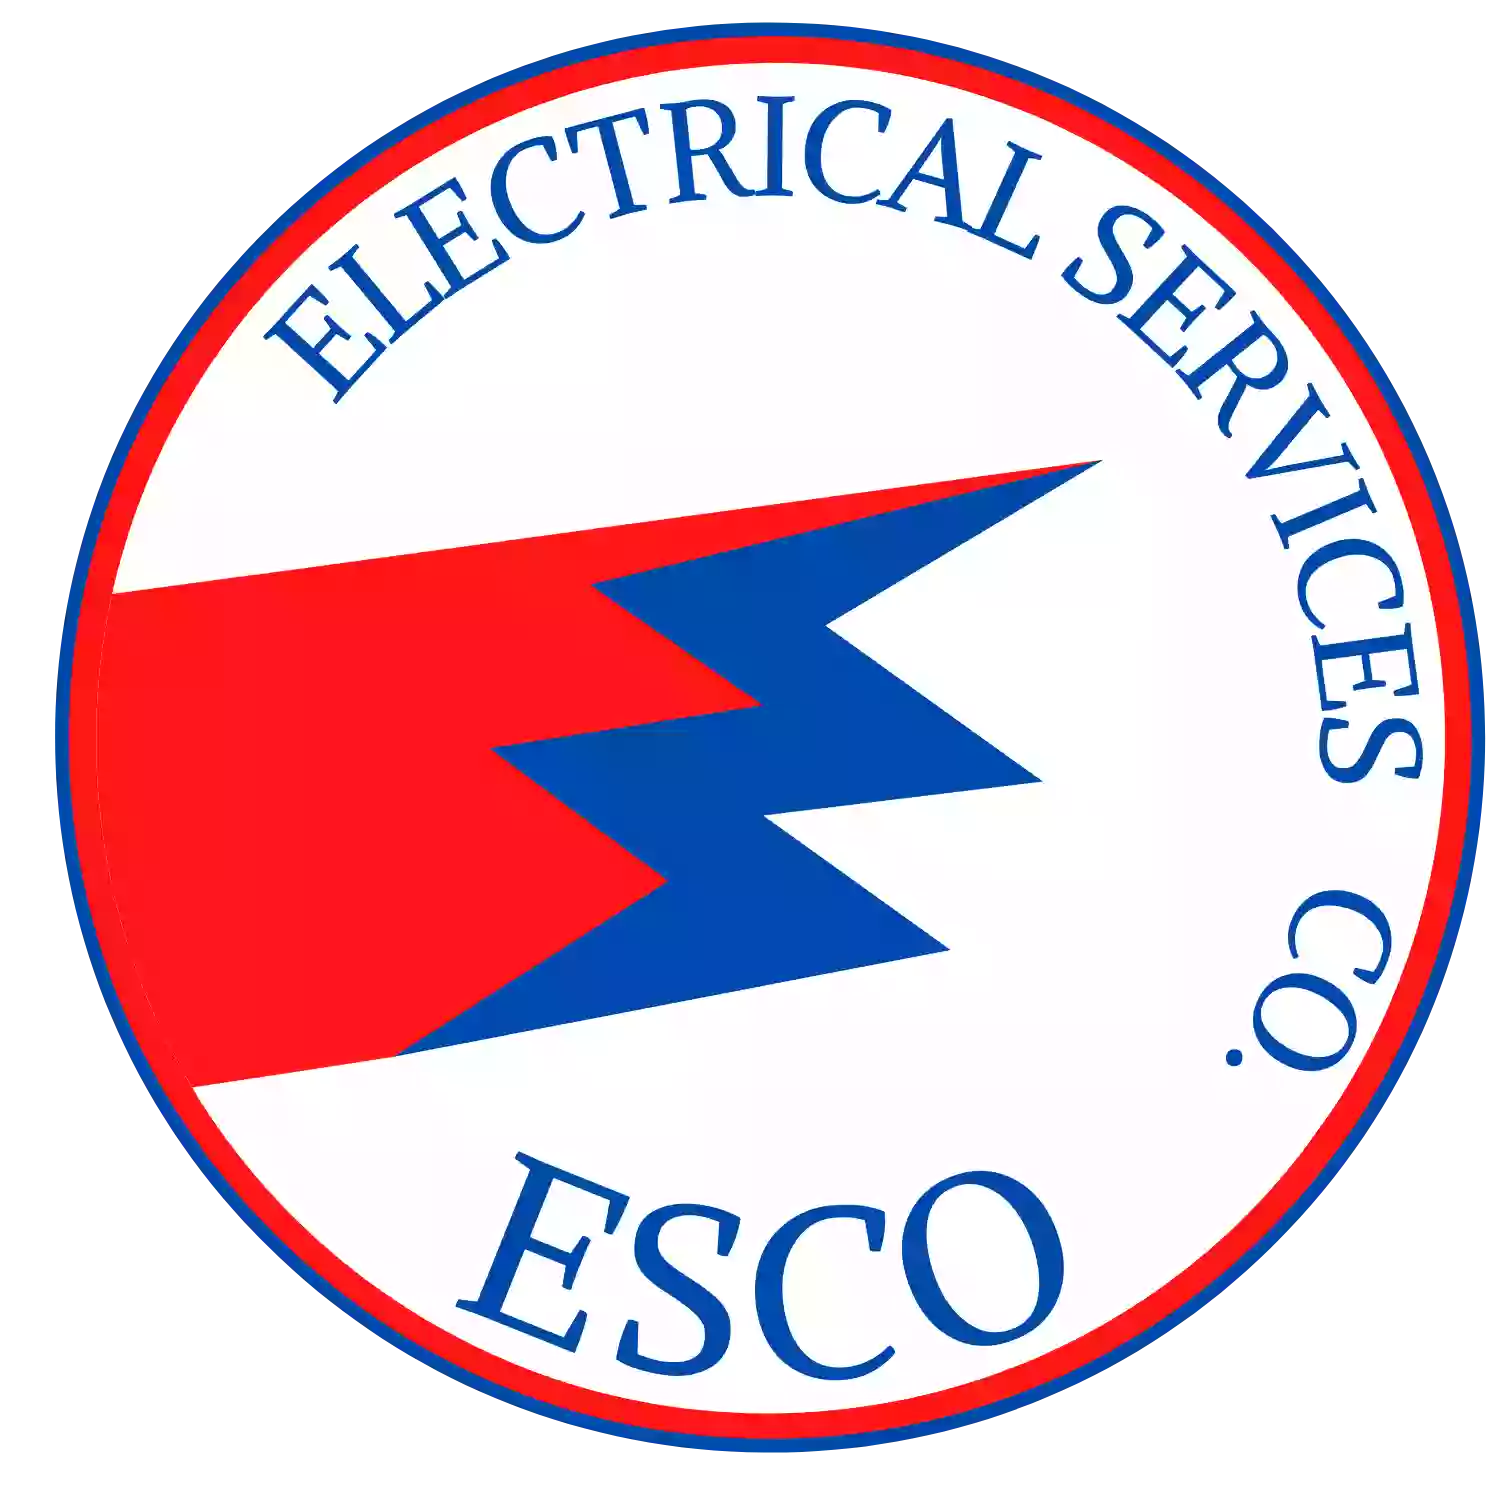 ESCO Electrical Services Co